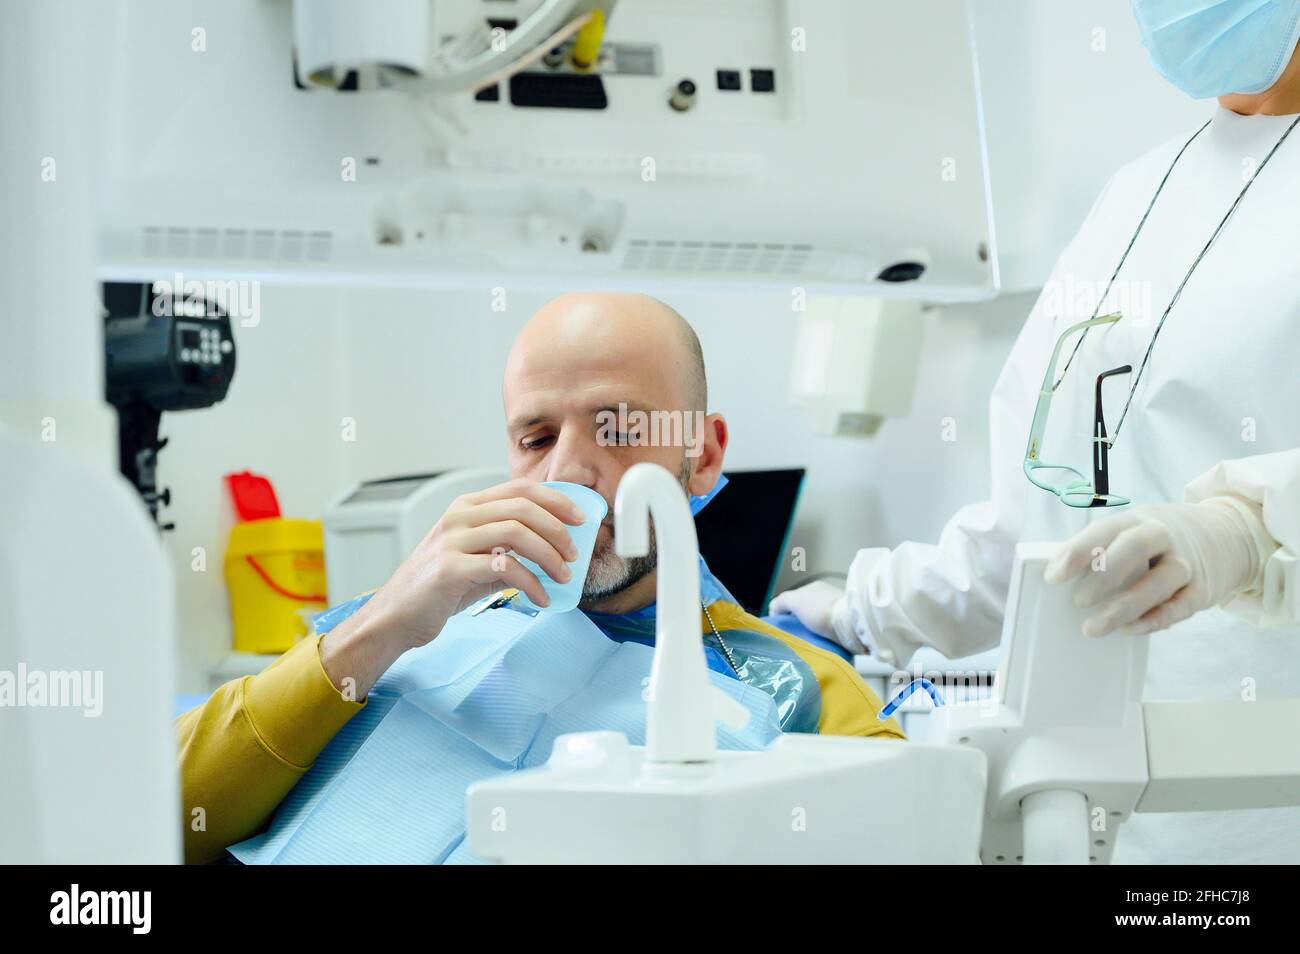 Coltivare dentista femminile non riconoscibile in maschera uniforme e sterile contro l'uomo versa l'acqua dal rubinetto in vetro dopo l'operazione orale Foto Stock